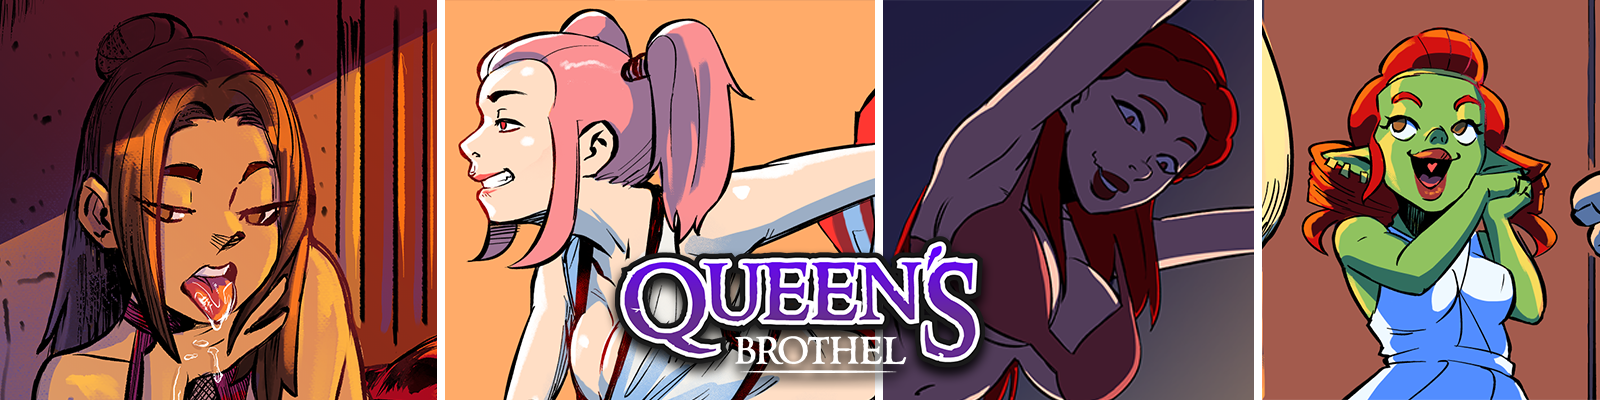 Queen's Brothel1.png